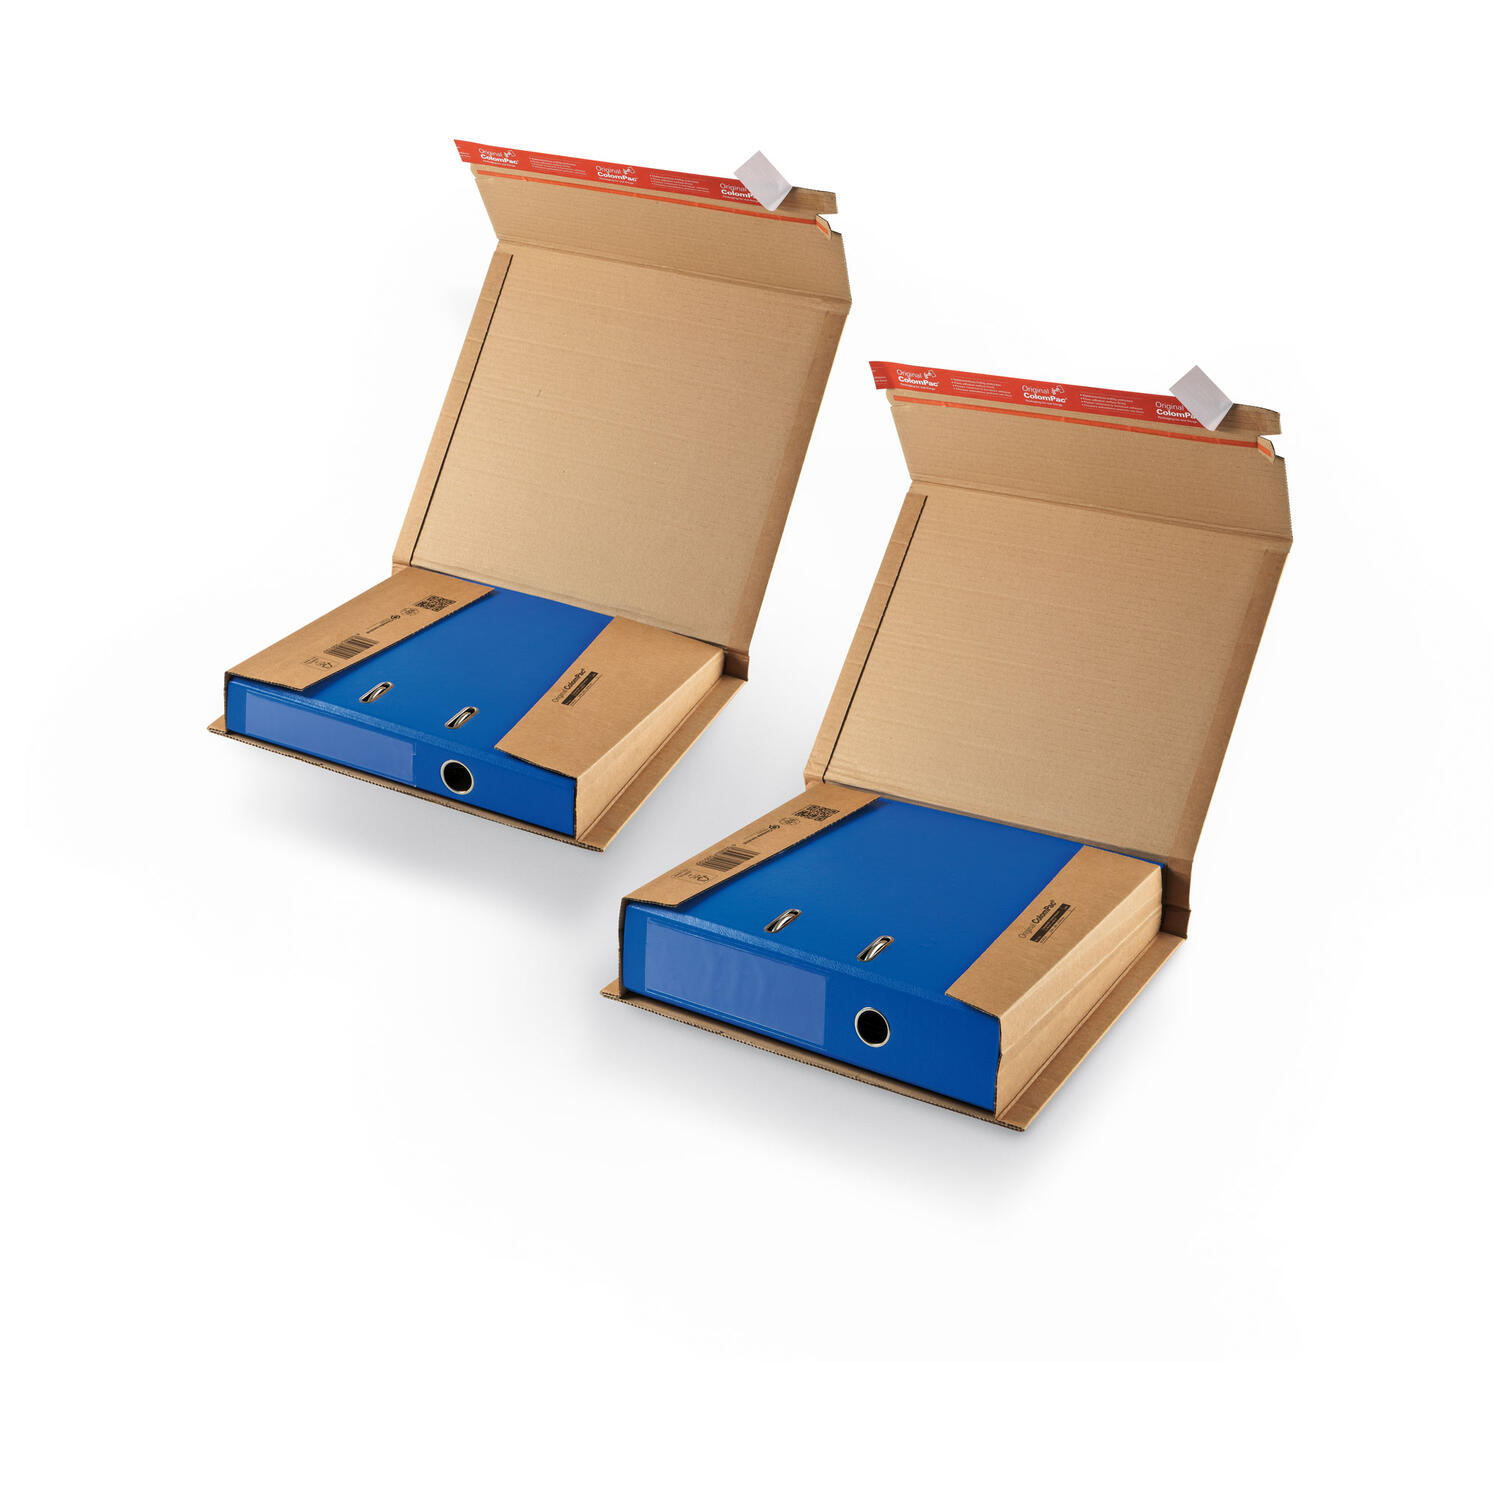 ColomPac Ordnerversandkarton flexible 365 x 300 x -85mm mit Selbstklebeverschluss & Aufreifaden braun